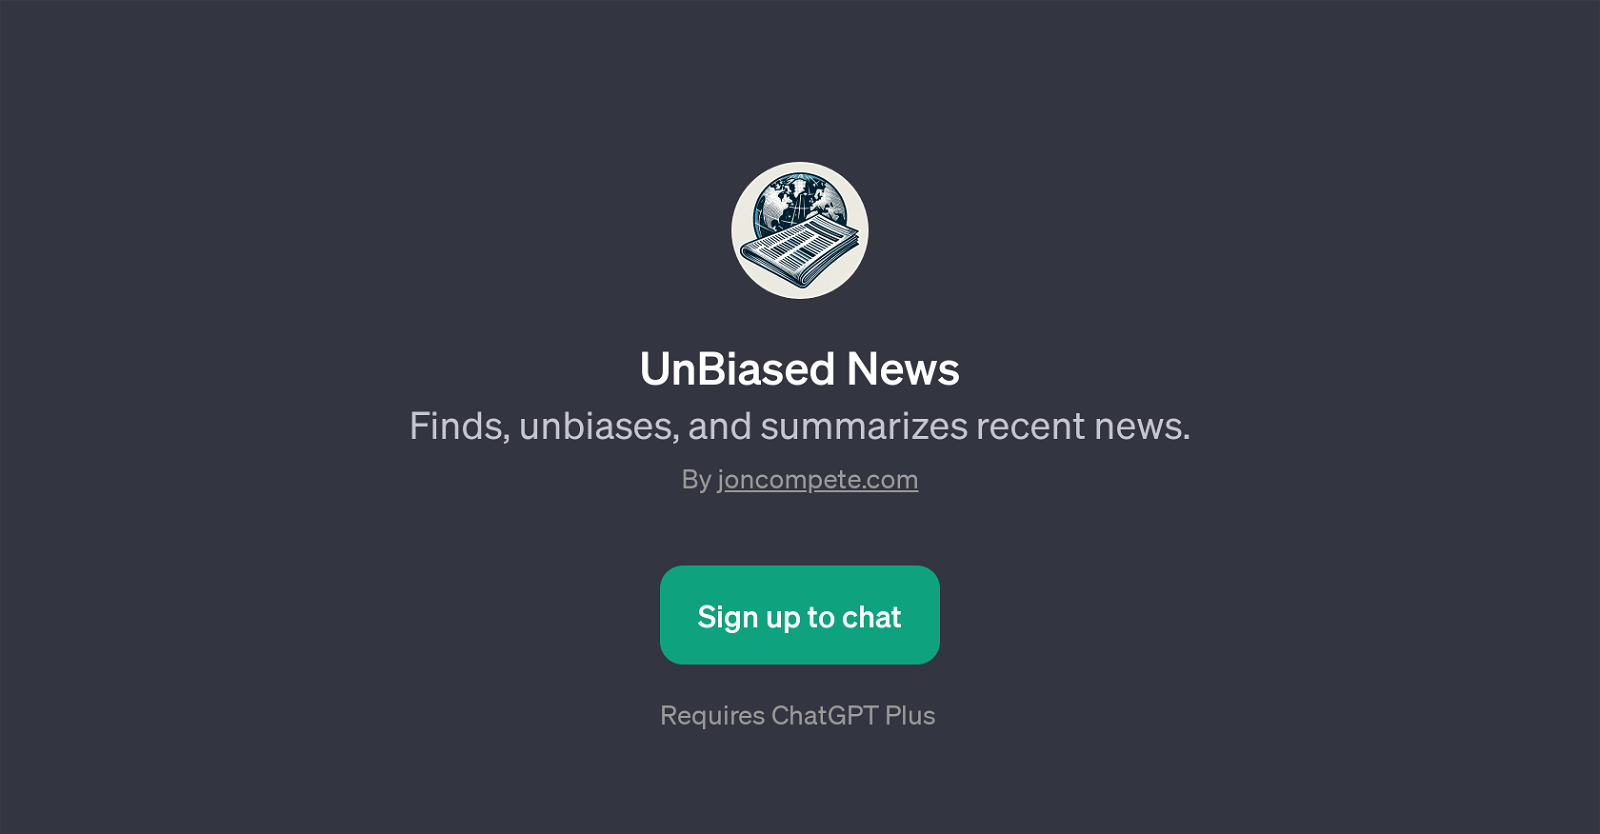 UnBiased News website